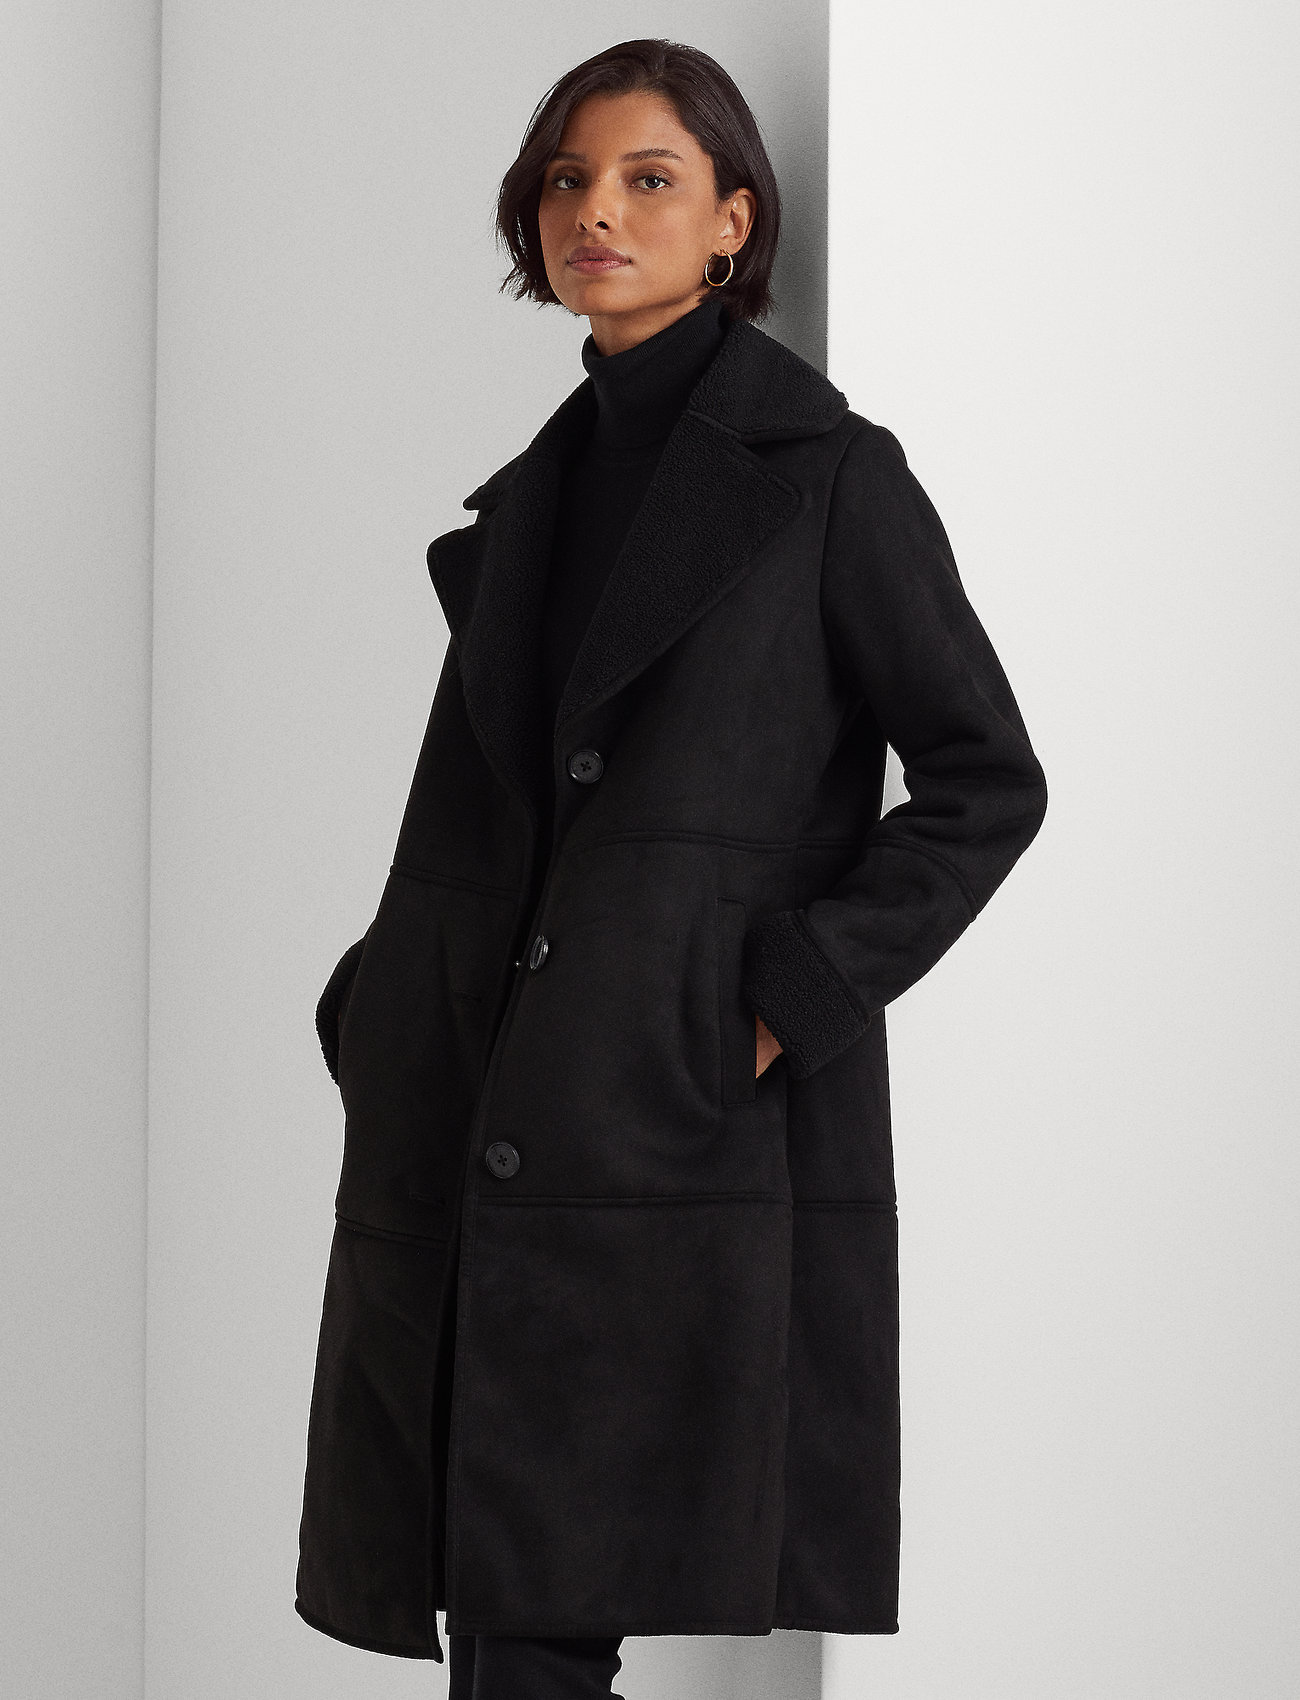 Optage lur rør Lauren Ralph Lauren Faux-shearling Coat (Black/Sort) - 2999 kr | Boozt.com